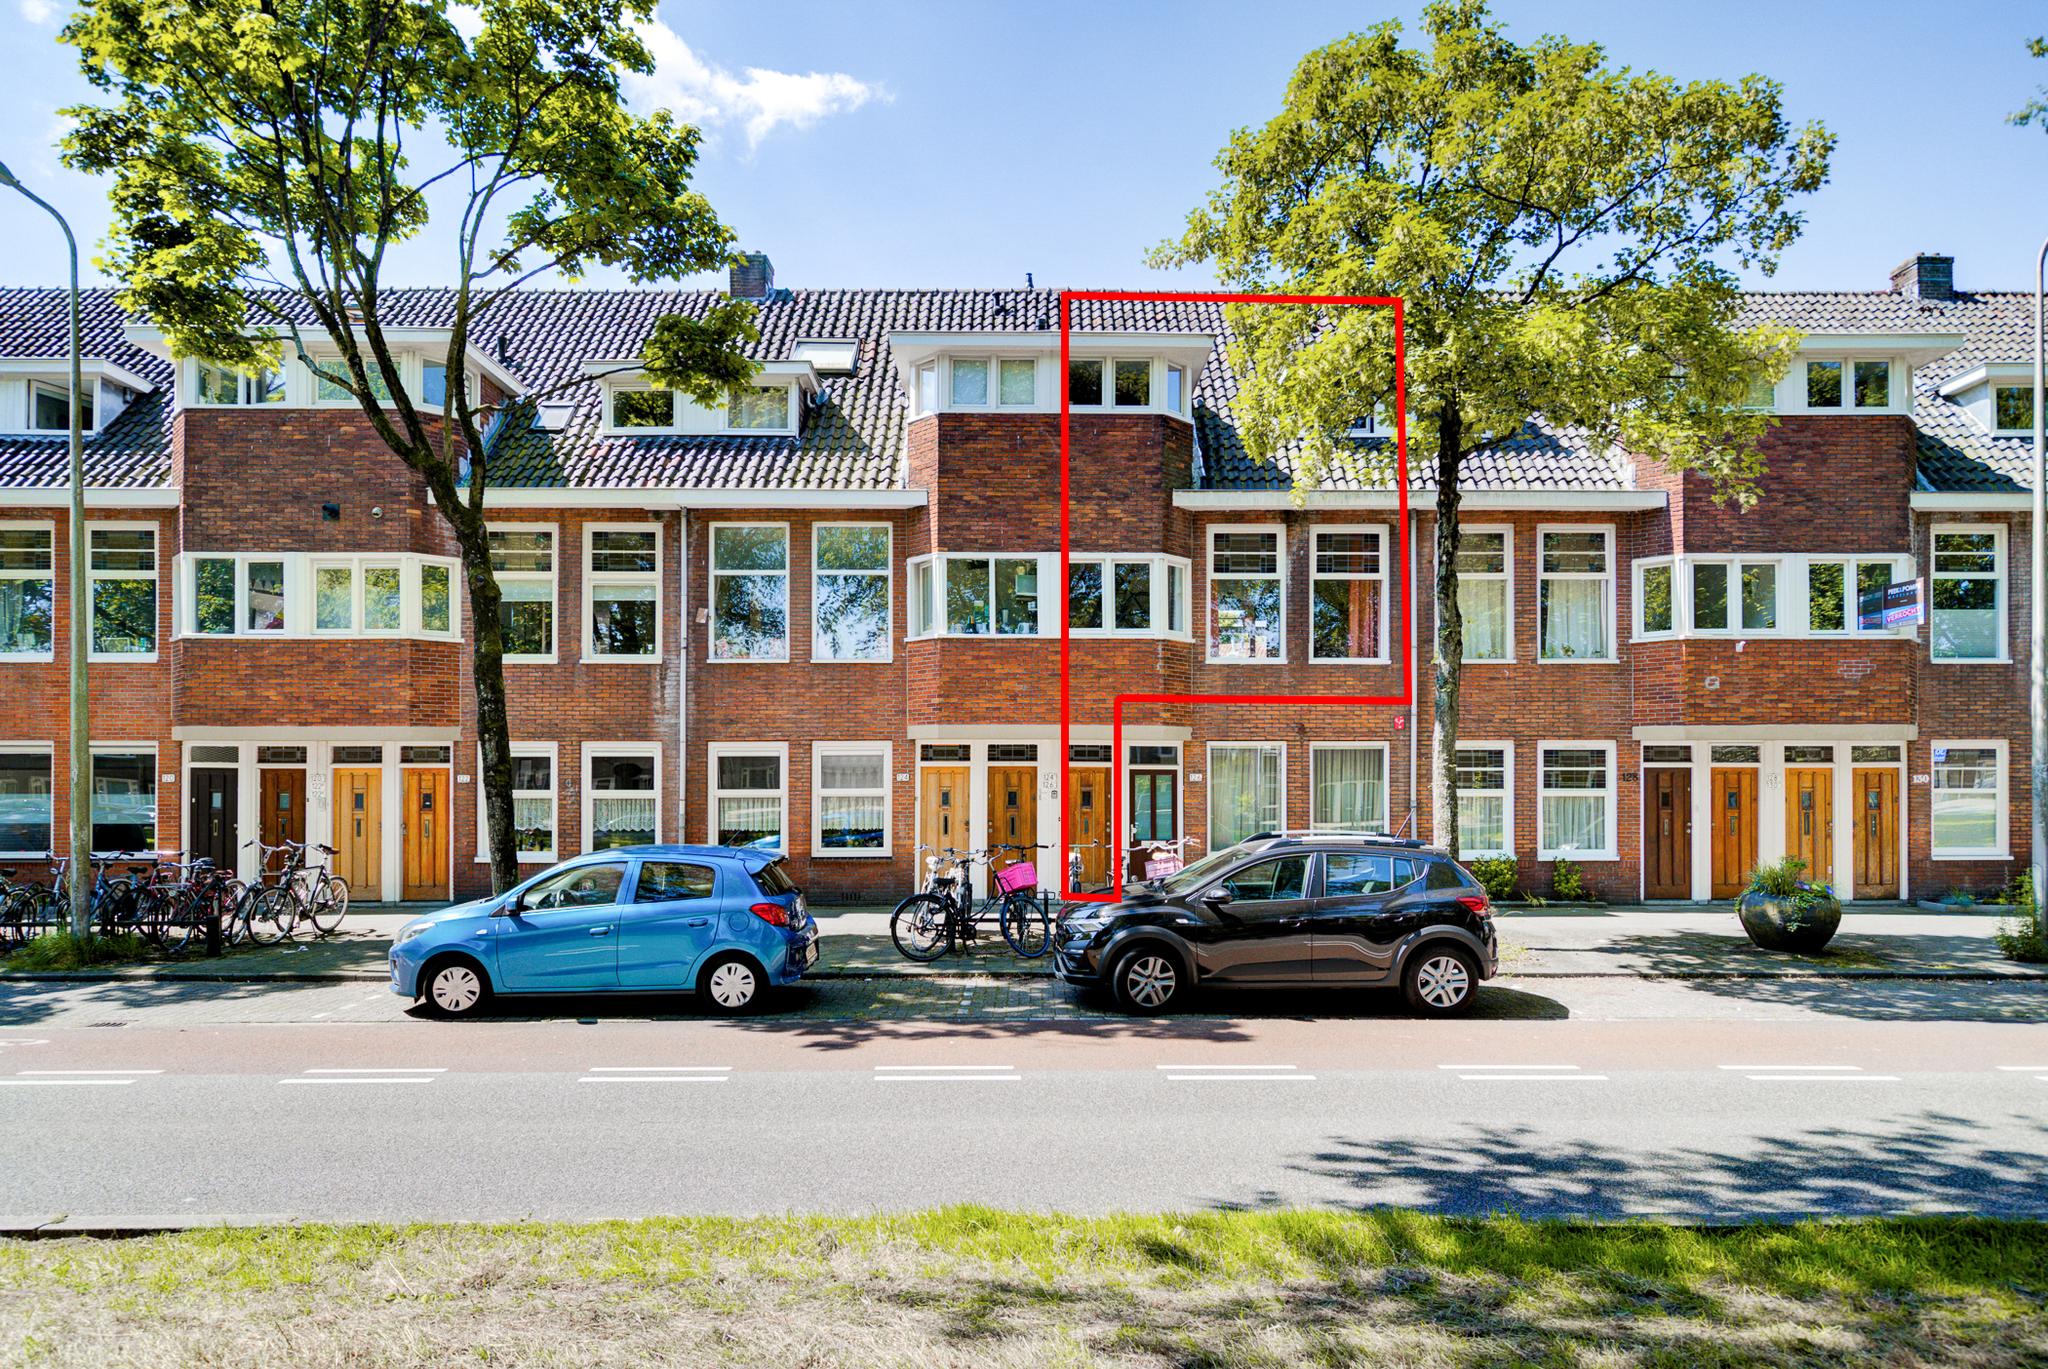 Burgemeester van Tuyllkade 126BS in Utrecht, UTRECHT